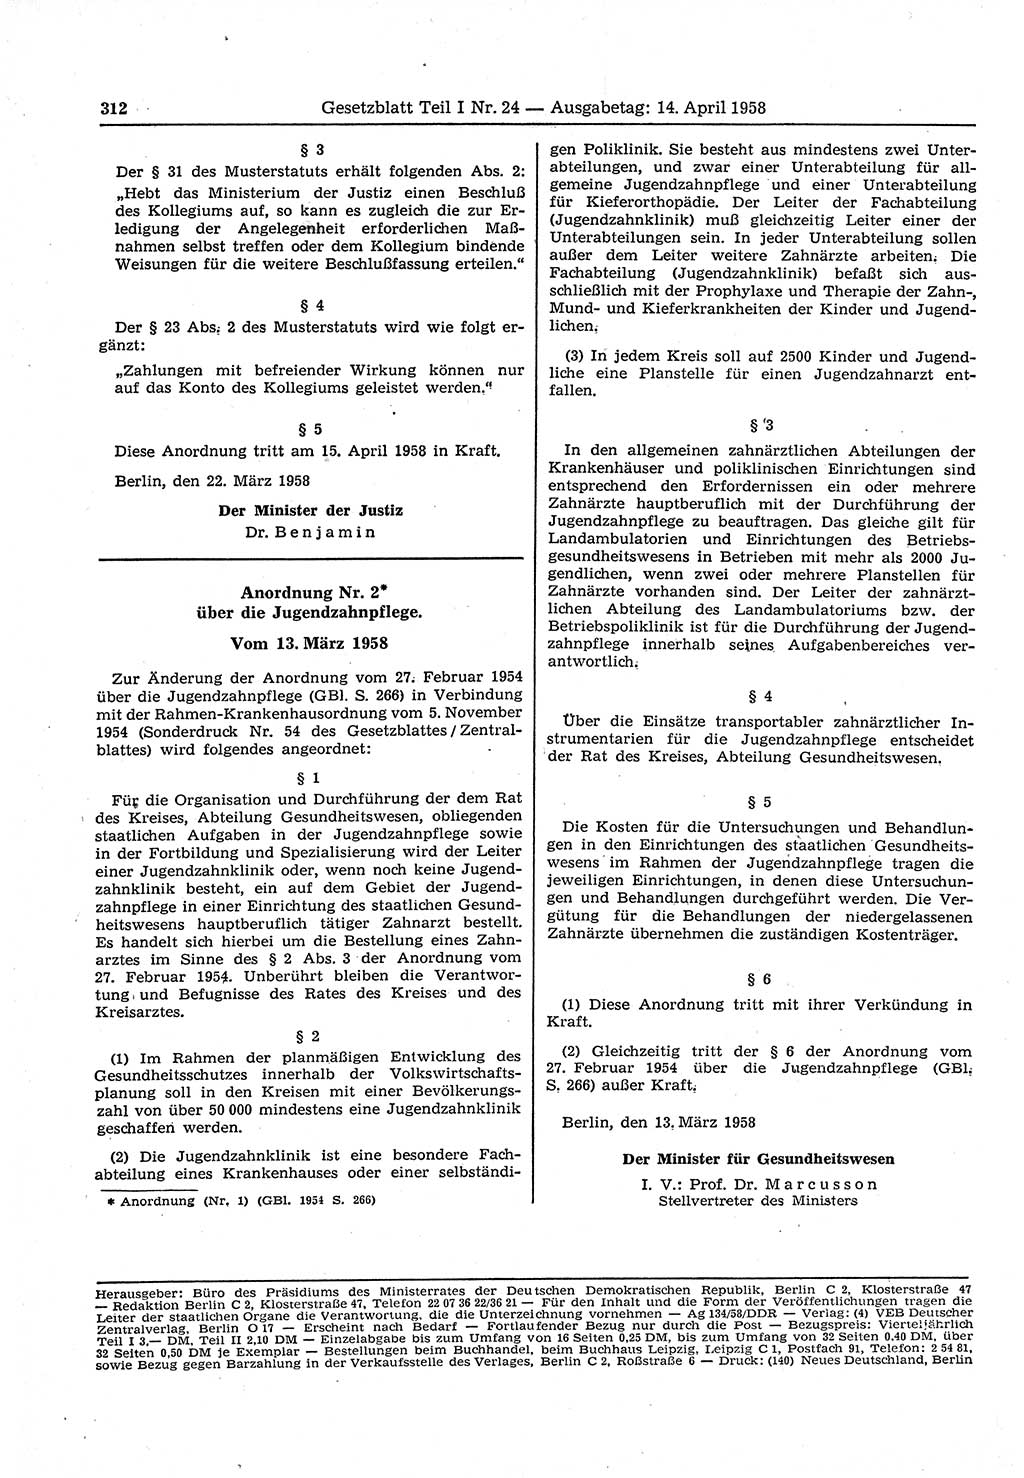 Gesetzblatt (GBl.) der Deutschen Demokratischen Republik (DDR) Teil Ⅰ 1958, Seite 312 (GBl. DDR Ⅰ 1958, S. 312)